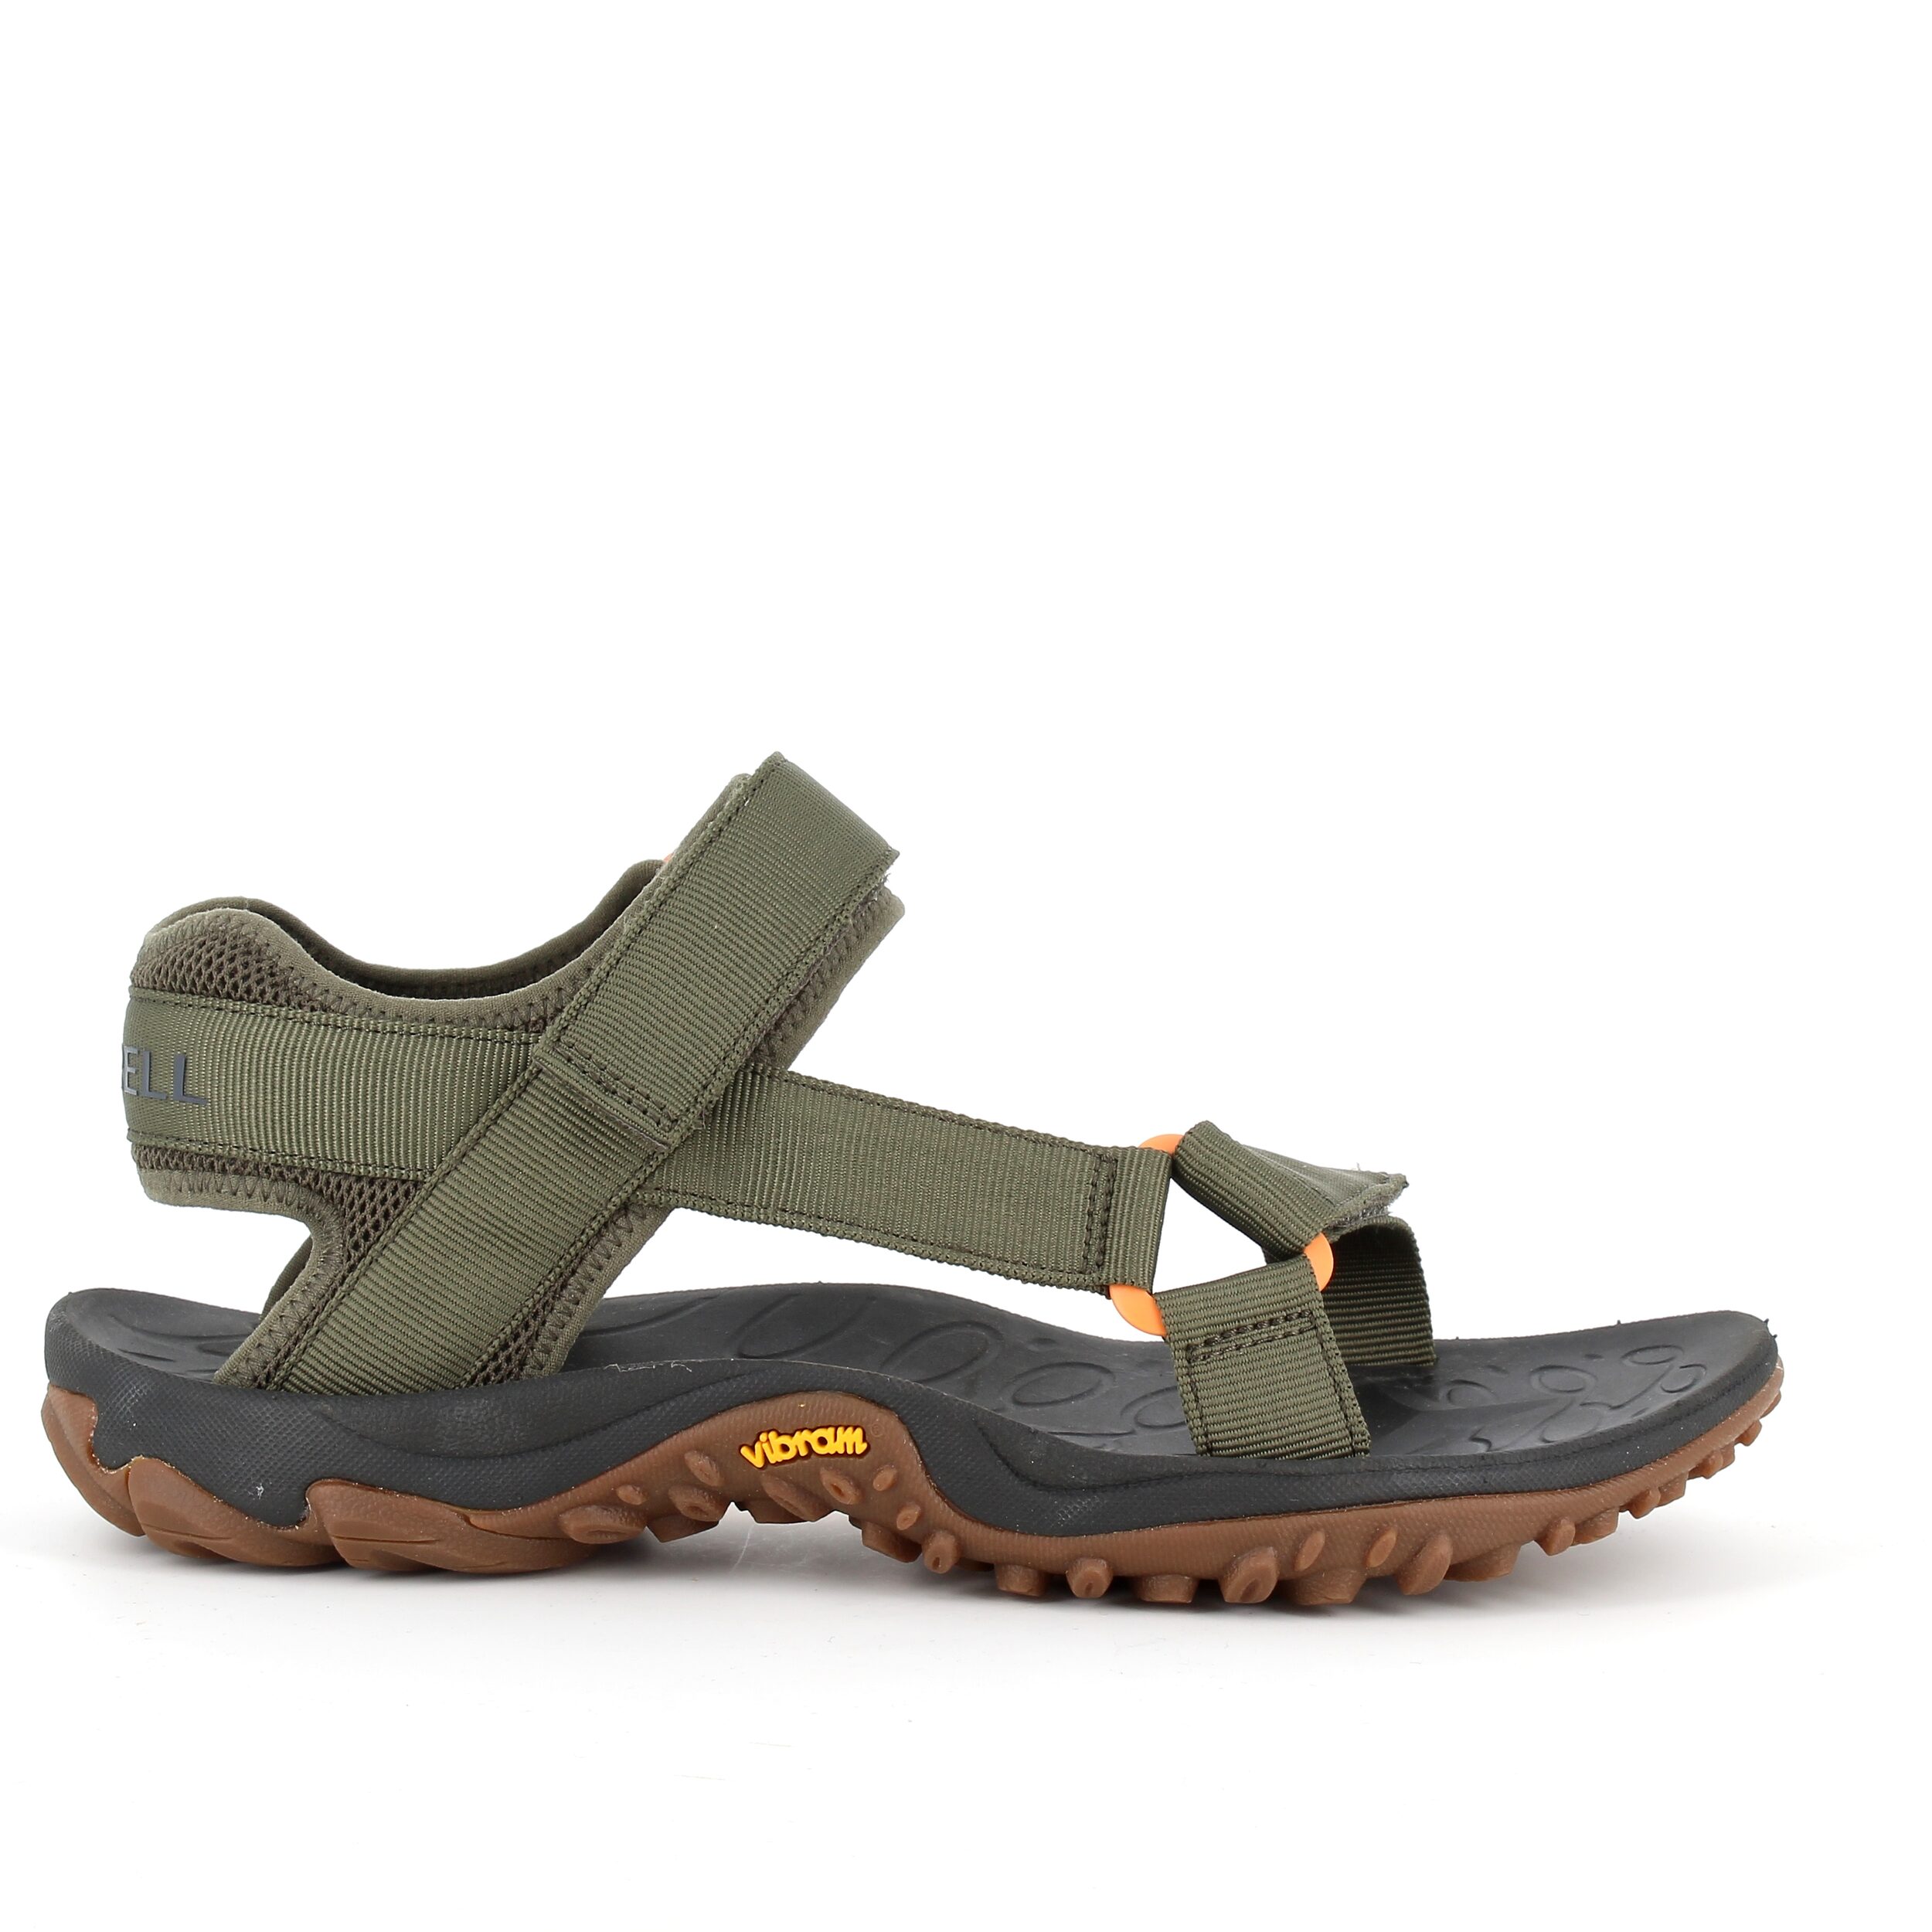 Grøn sandal fra Merrell med fleksibel gummi bund - 46